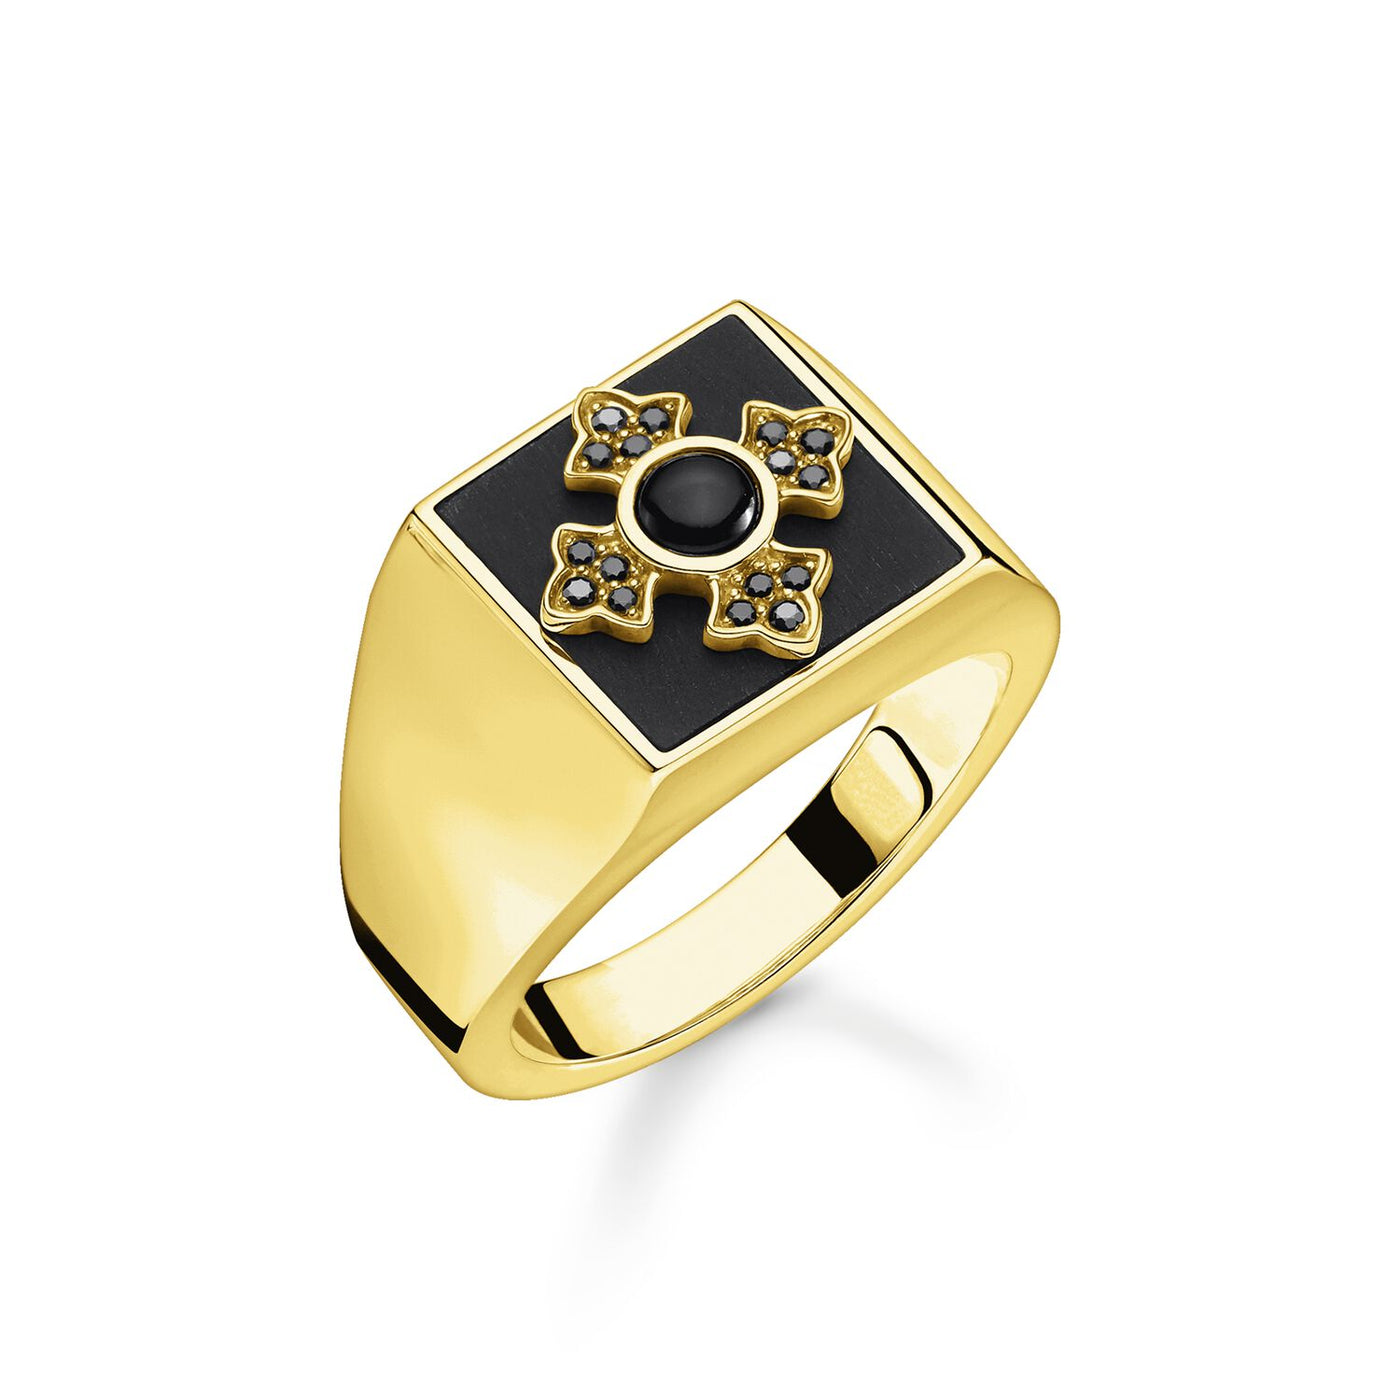 Thomas Sabo Ring Royalty Gold